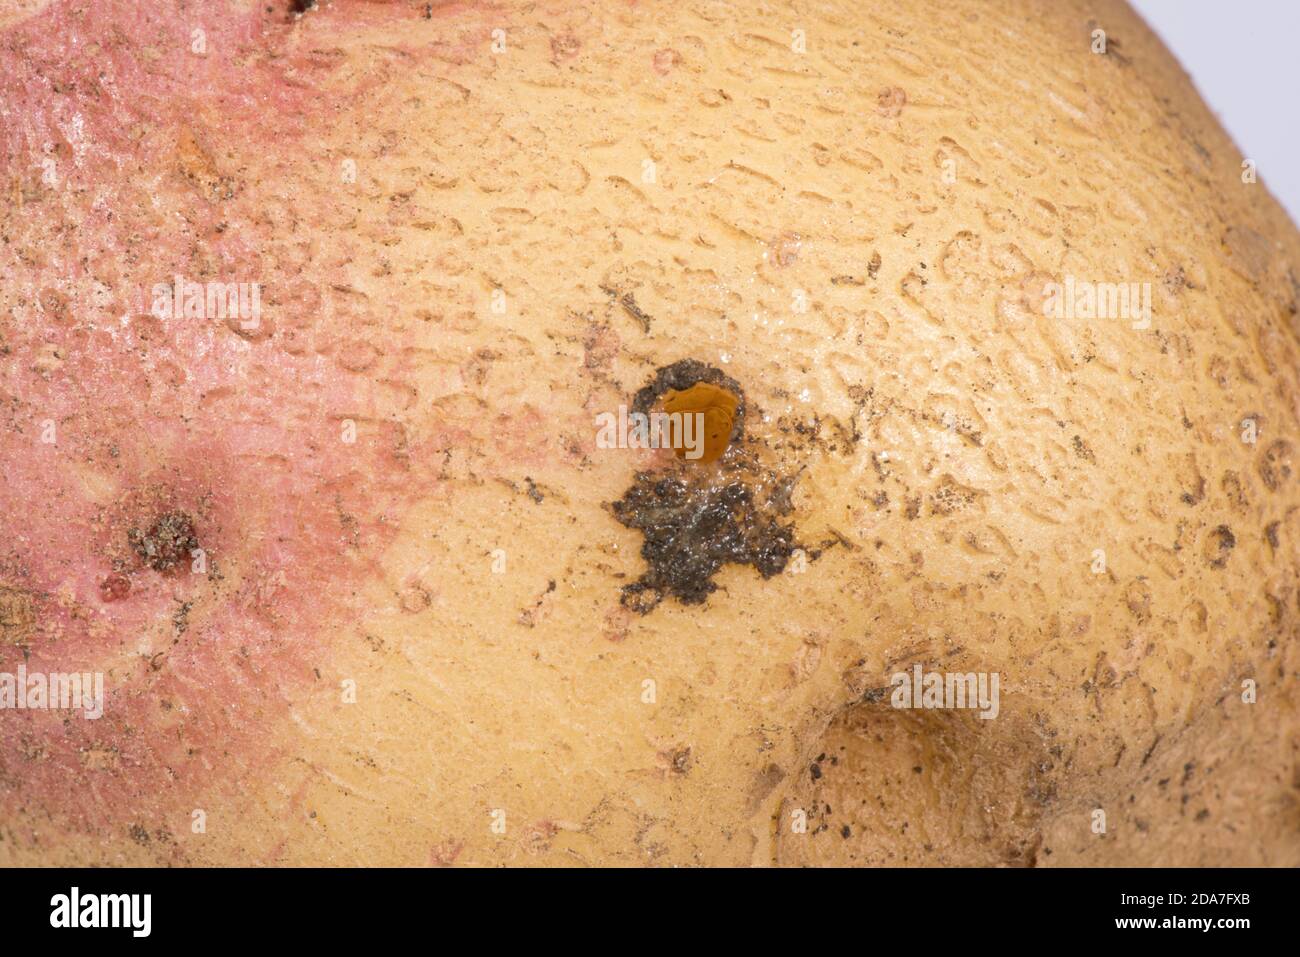 Budapest oder kielige Schnecke (Milax budapestensis) ein- und Ausgangs-Loch in einer Kartoffelknolle, invasive Schädlingsarten, Berkshire, September Stockfoto